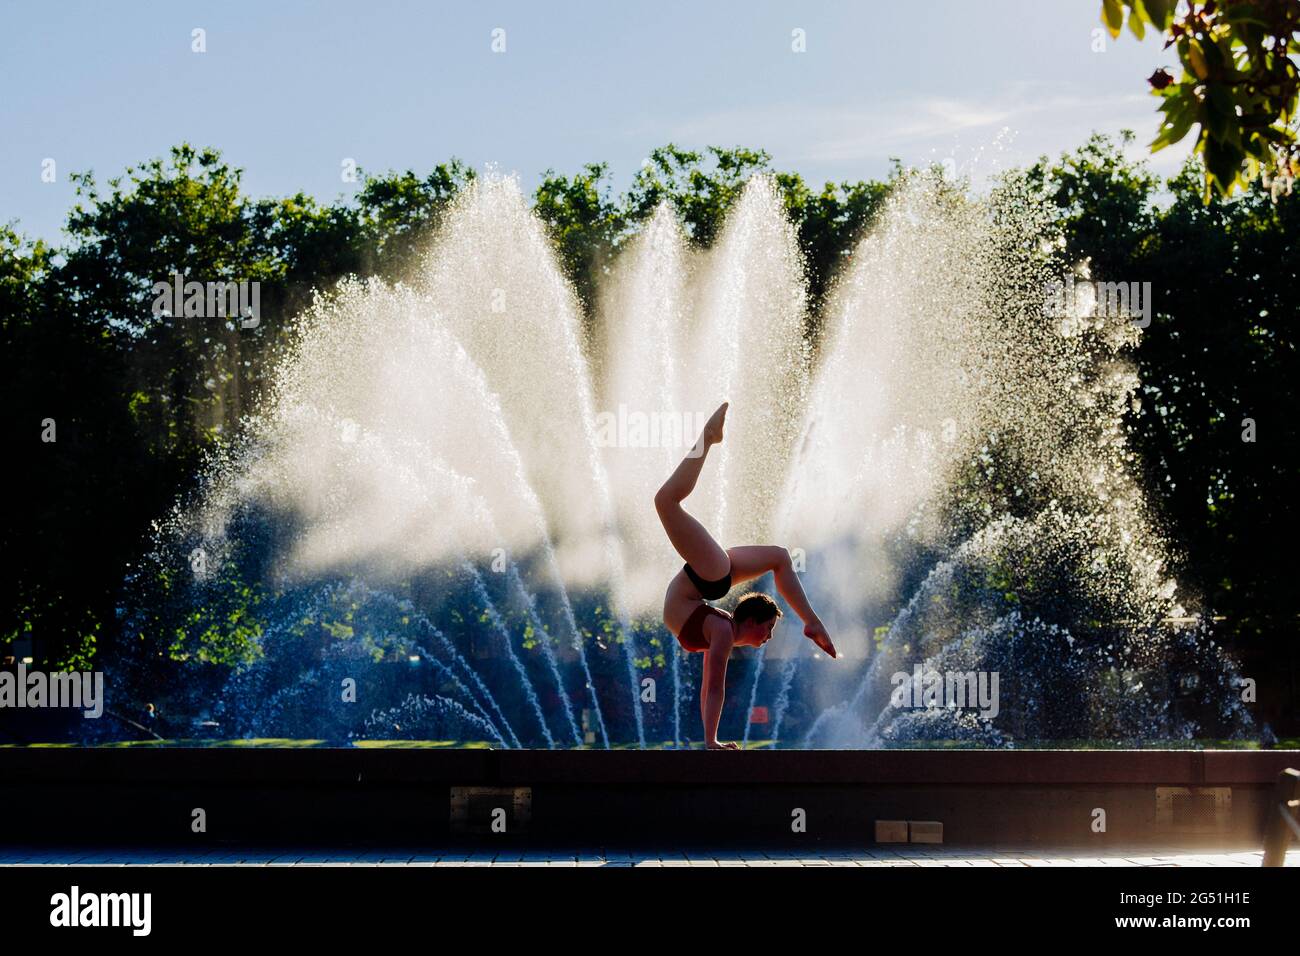 Femme faisant la posture acrobatique contre la fontaine Banque D'Images